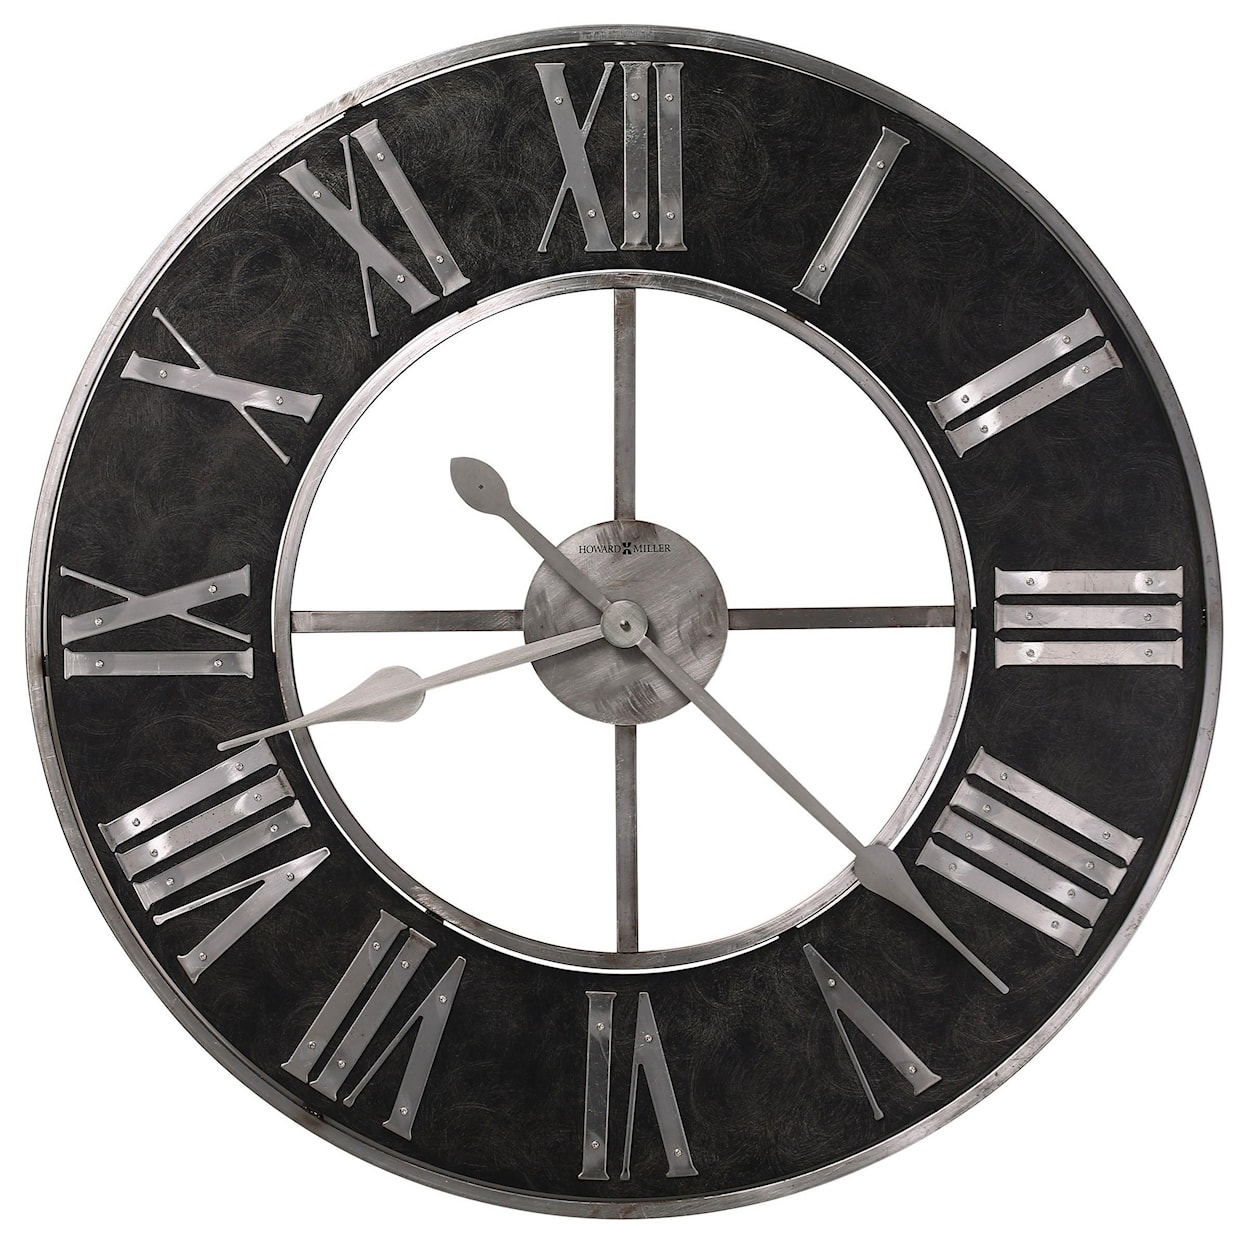 Howard Miller Wall Clocks Dearborn Wall Clock